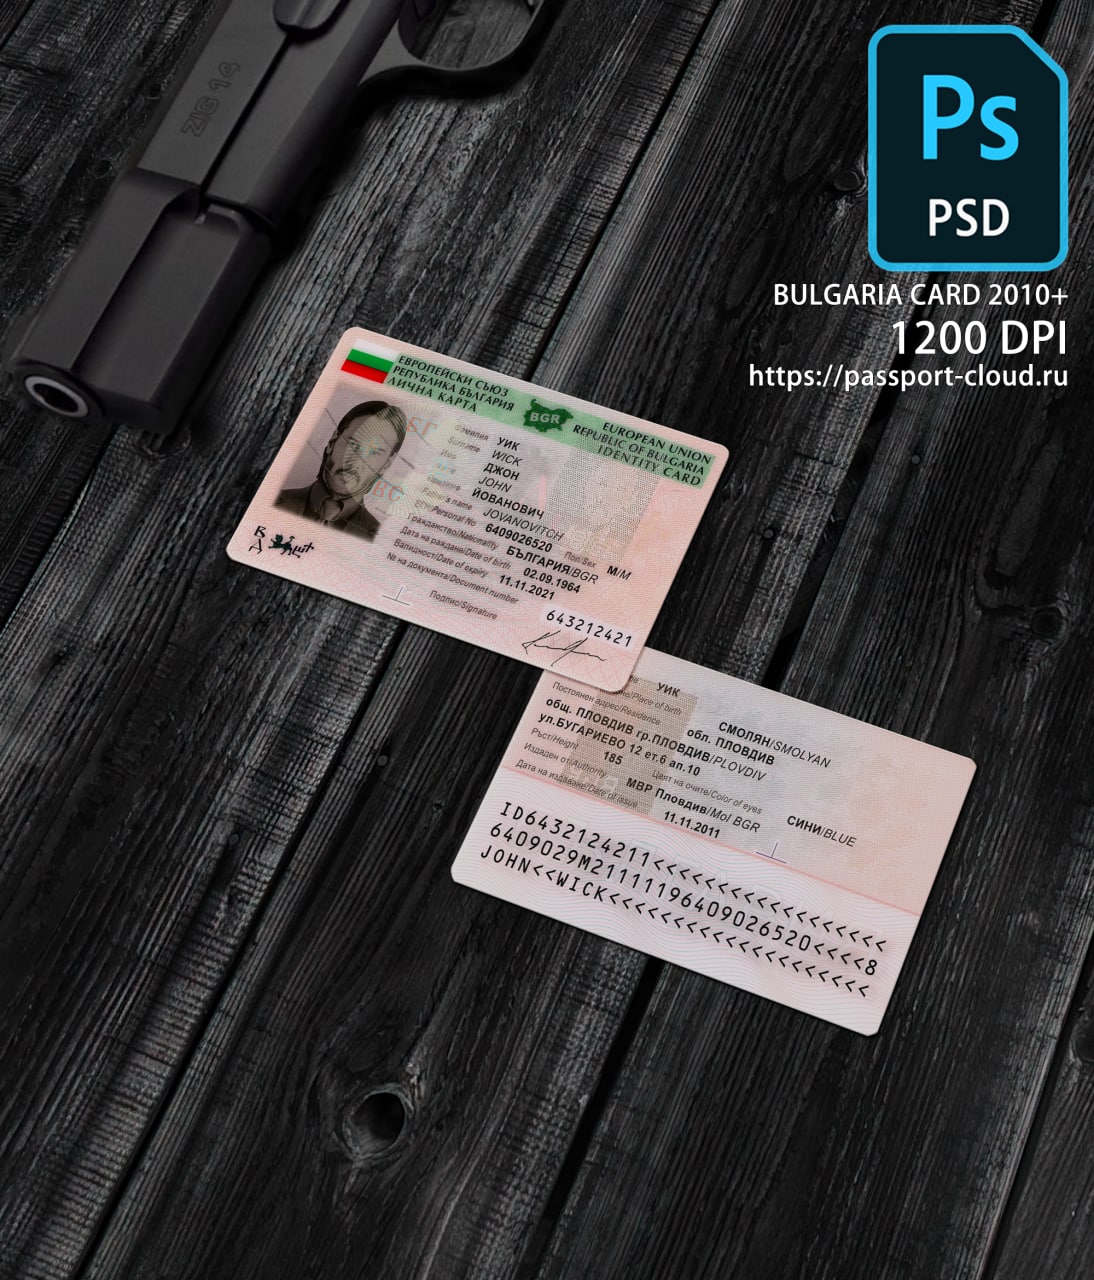 Bulgaria ID Card 2010+1